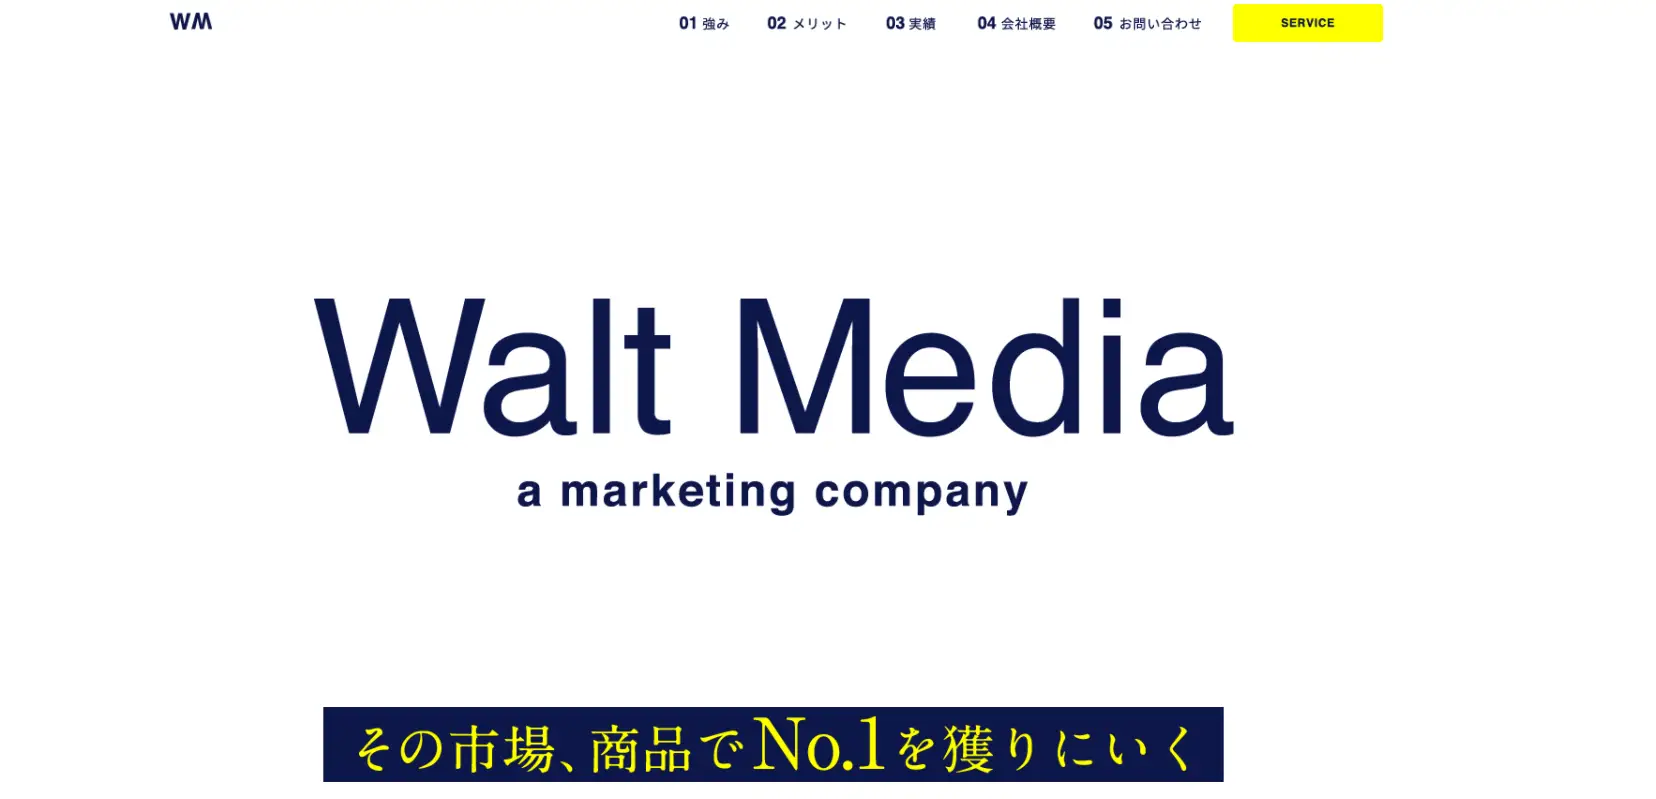 Walt Media